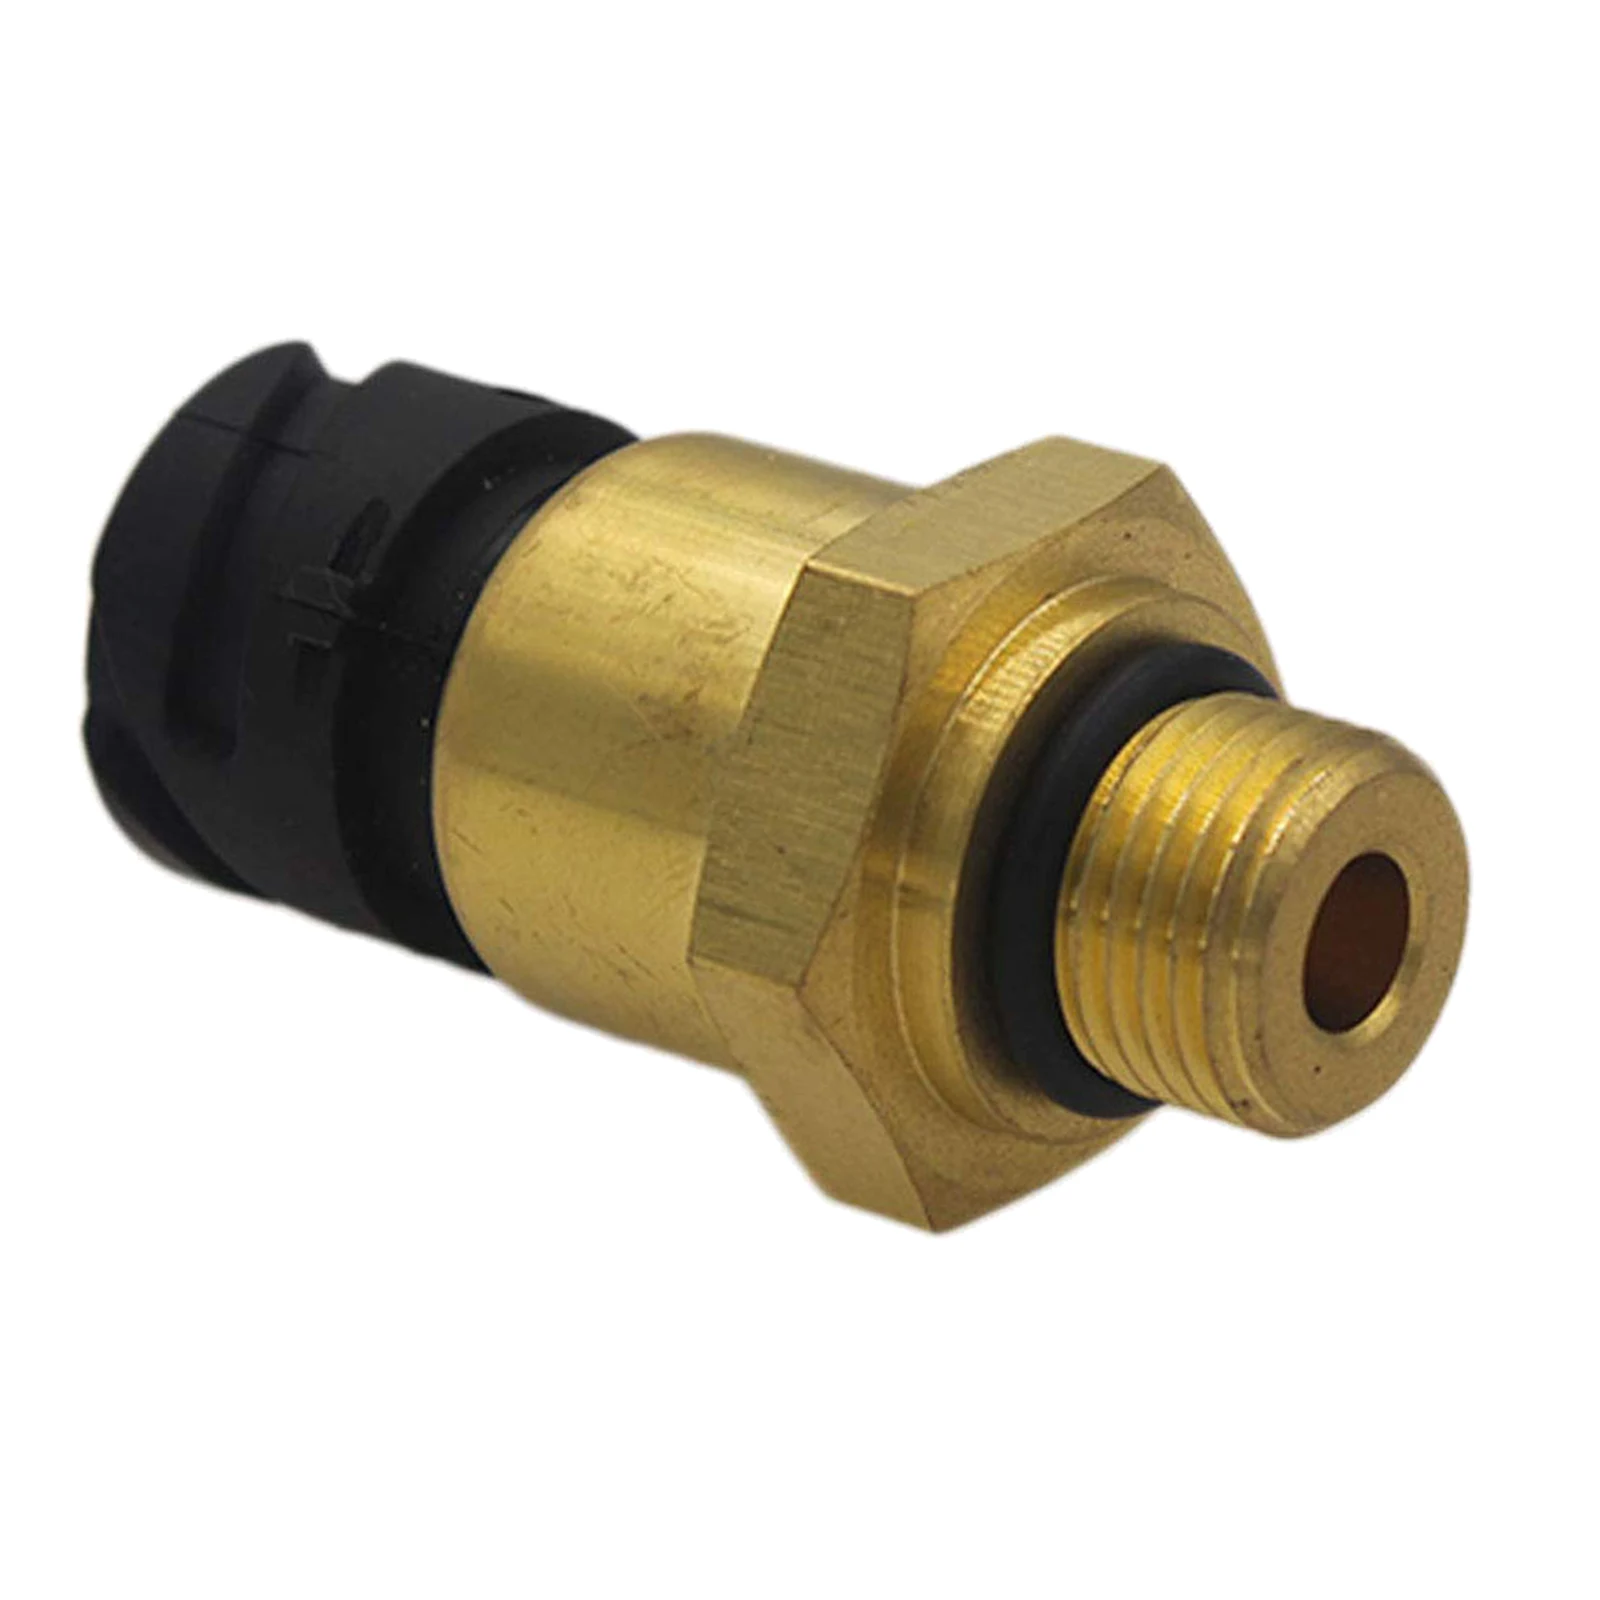 Automotive Oil Pressure Sensor Replacement 20484676 Engine 7421634017 20452439 20499340 Crankcase Pressure Switch for Volvo